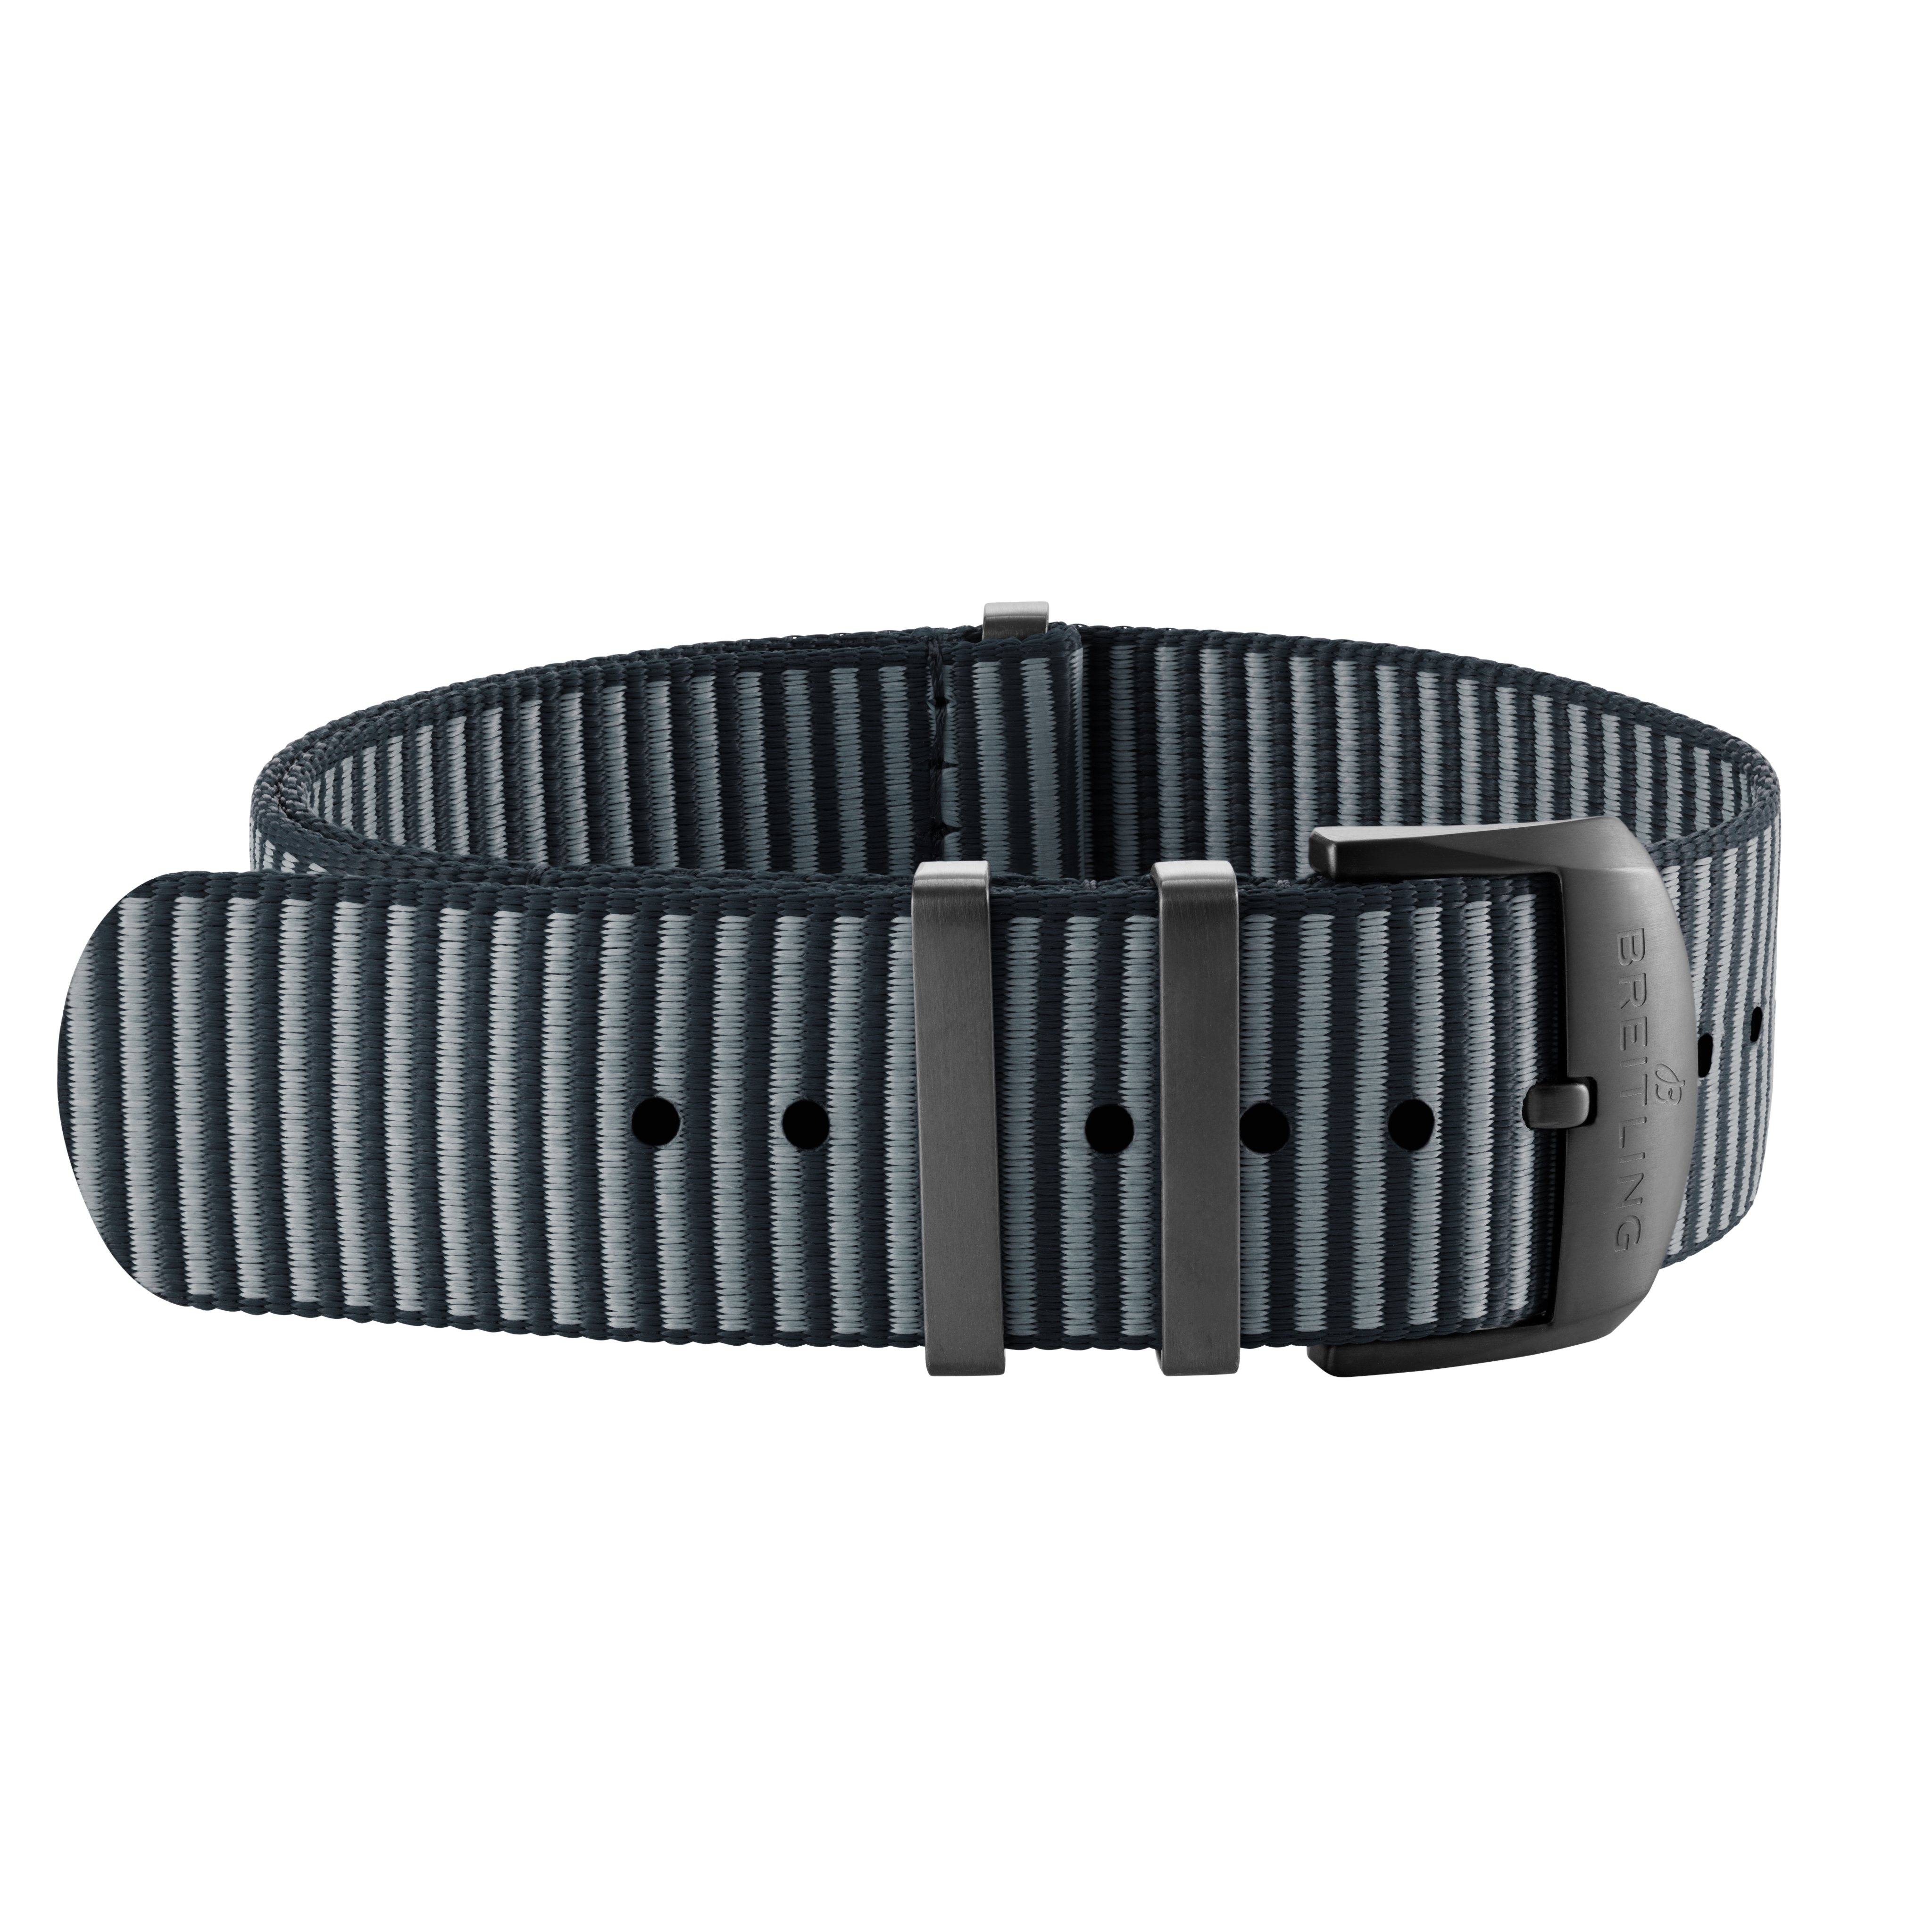 Bracelet une pièce Outerknown en fil ECONYL® gris (avec passants en acier inoxydable avec revêtement DLC) - 24 mm